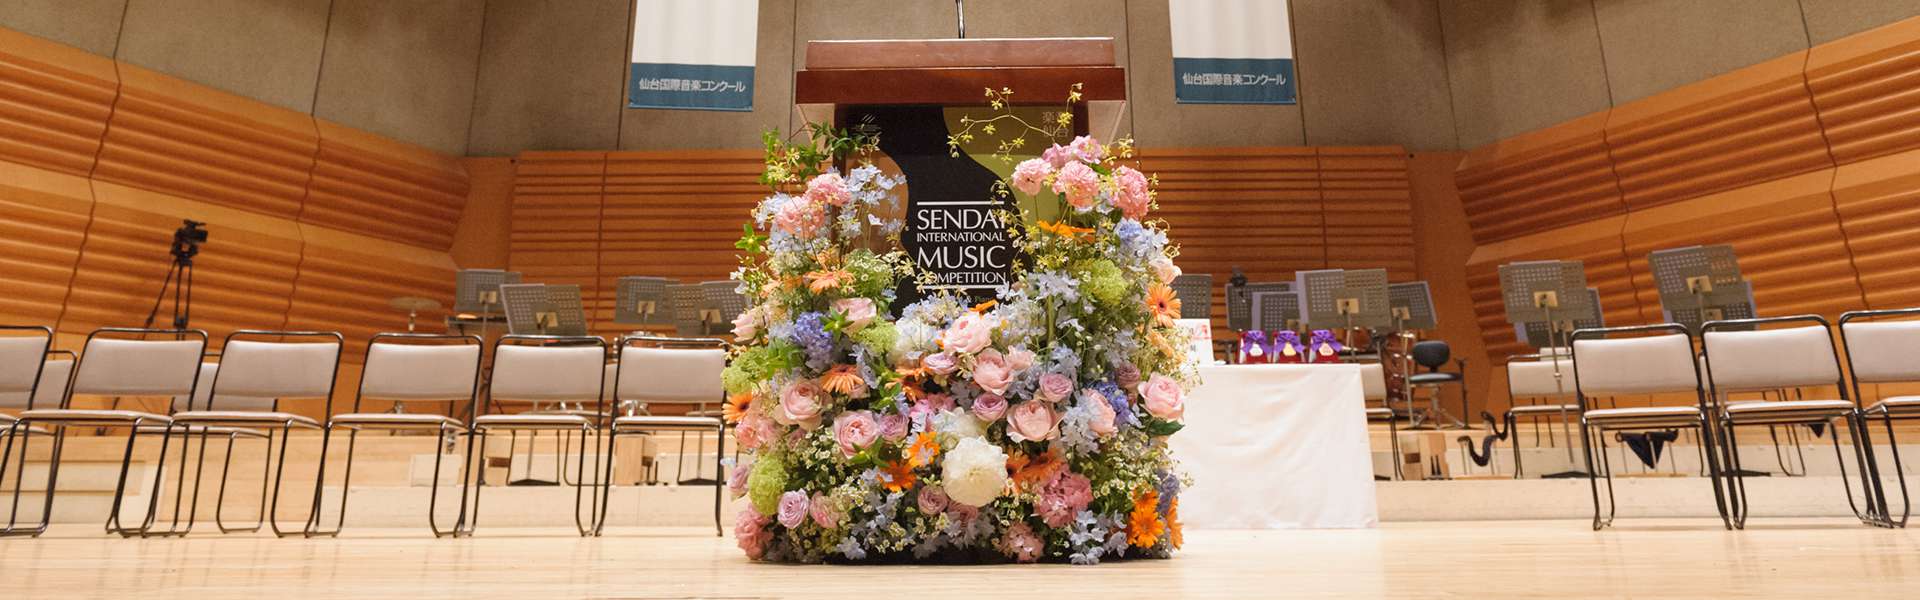 橘和美優さんが、第9回 宗次エンジェルヴァイオリンコンクールで優勝されました！ | 仙台国際音楽コンクール公式サイト